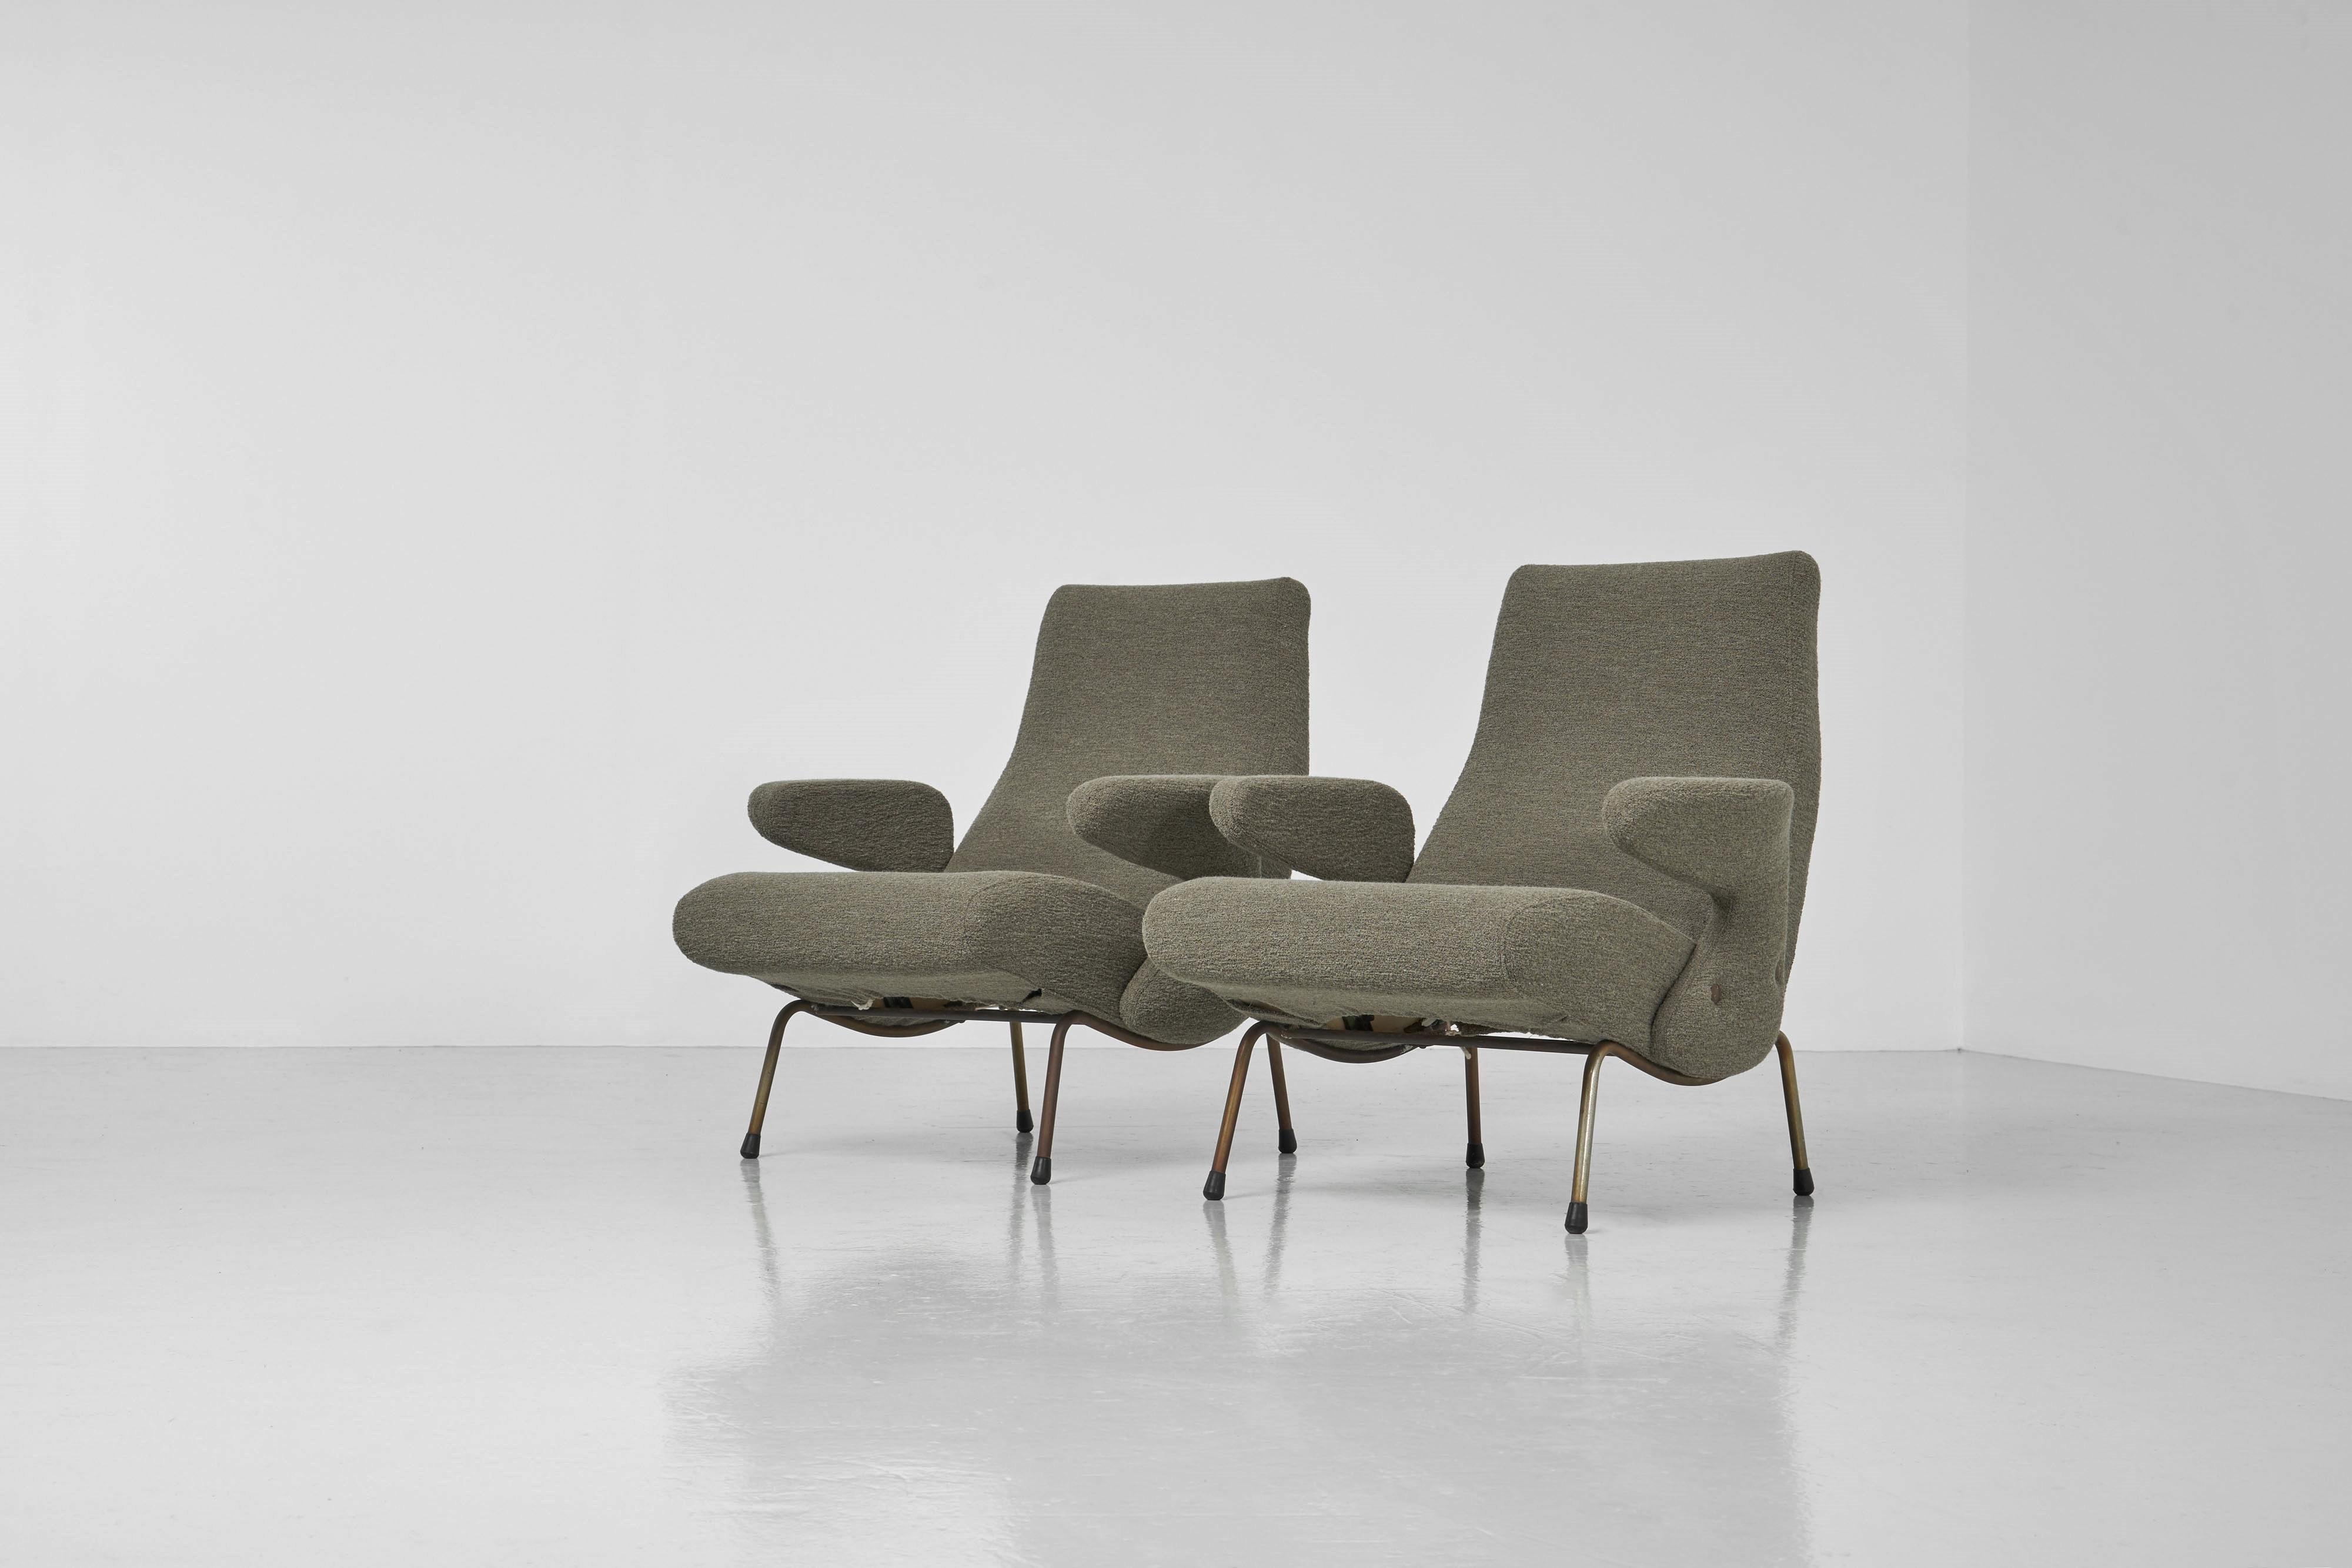 Les chaises longues Delfino, conçues par Erberto Carboni pour Artflex en 1955, sont des pièces de mobilier emblématiques. Les premières versions originales de ces chaises présentent des pieds en laiton magnifiquement patinés, conservant leur forme